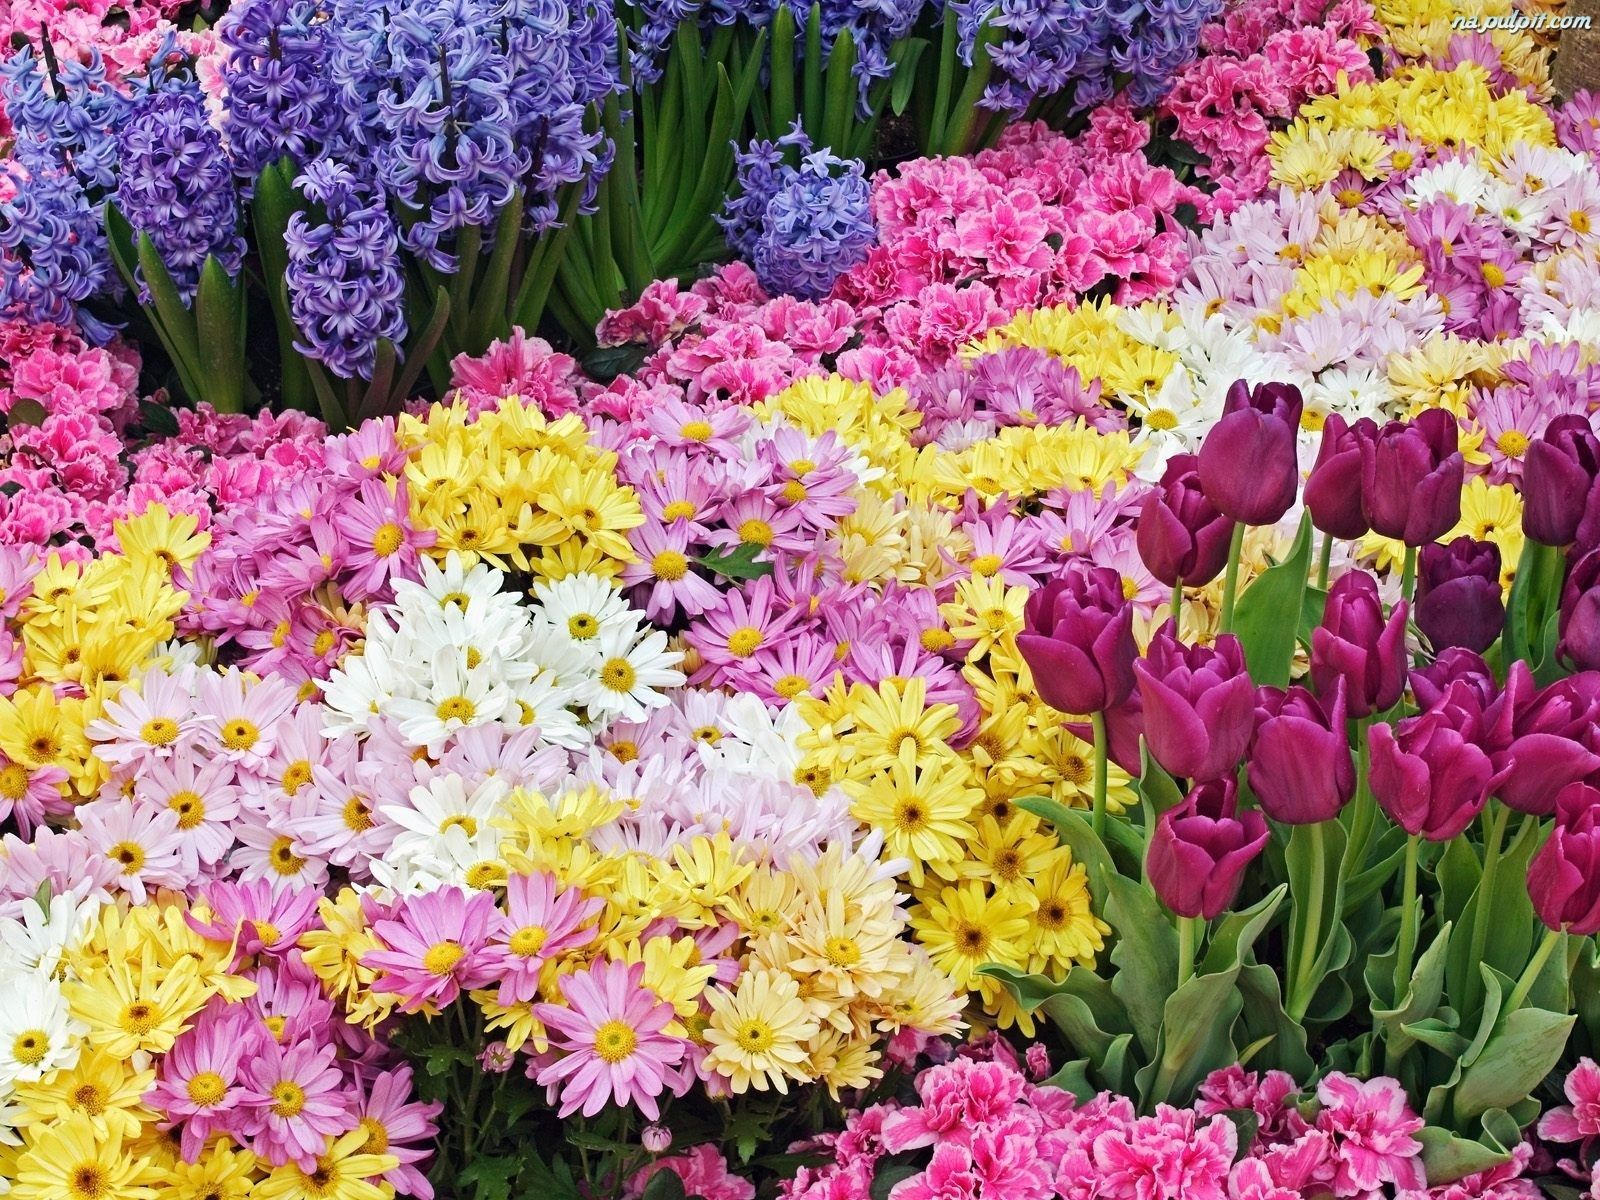 Rozne Ogrod Chryzantemy Kolorowe Tulipany Kwiaty.jpeg 1600×1200